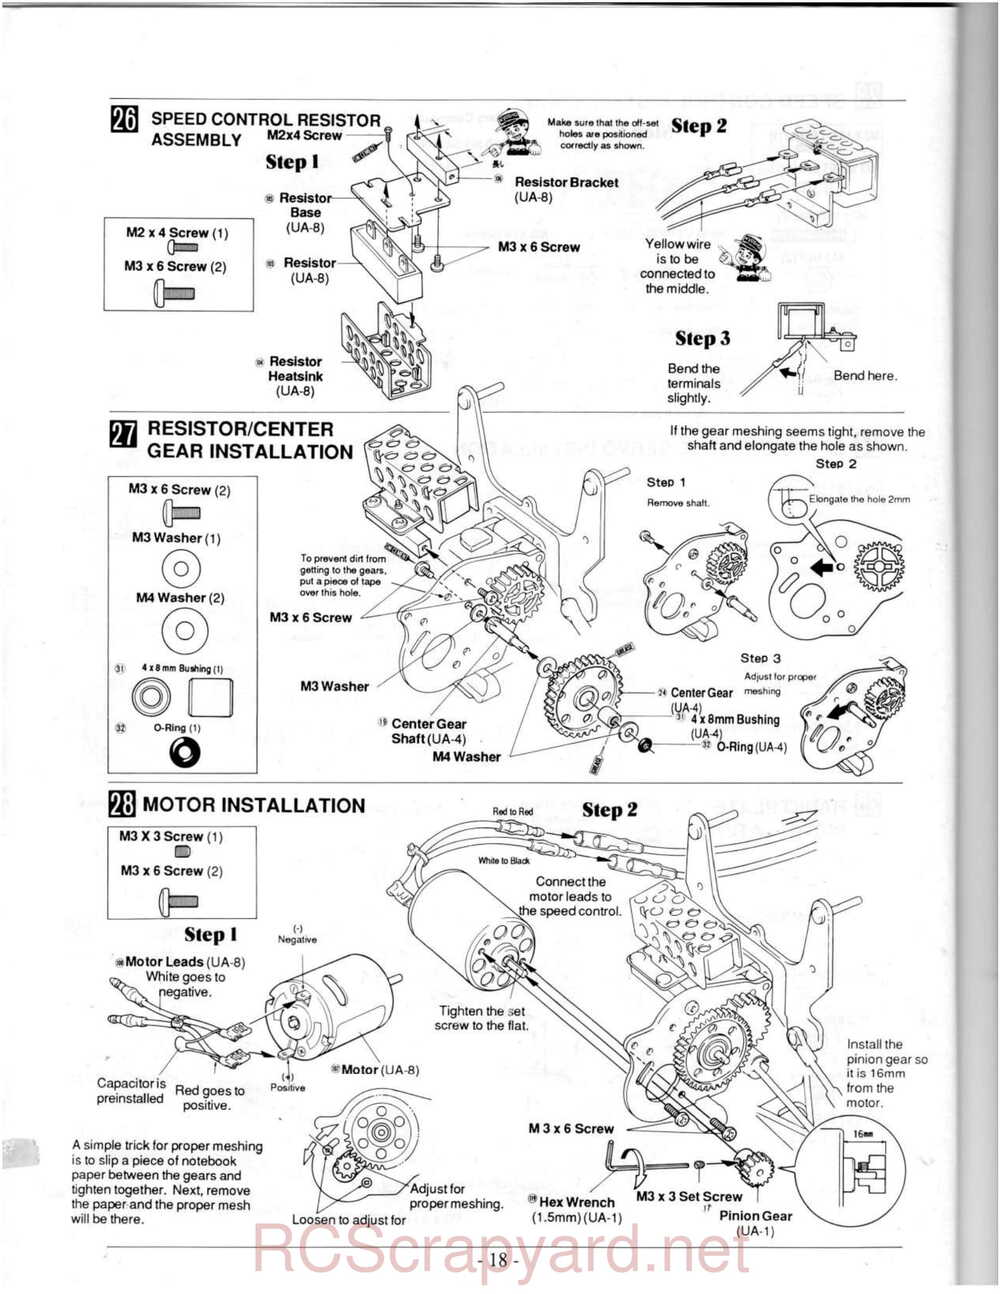 Kyosho - 3118 - Ultima-II - Manual - Page 18